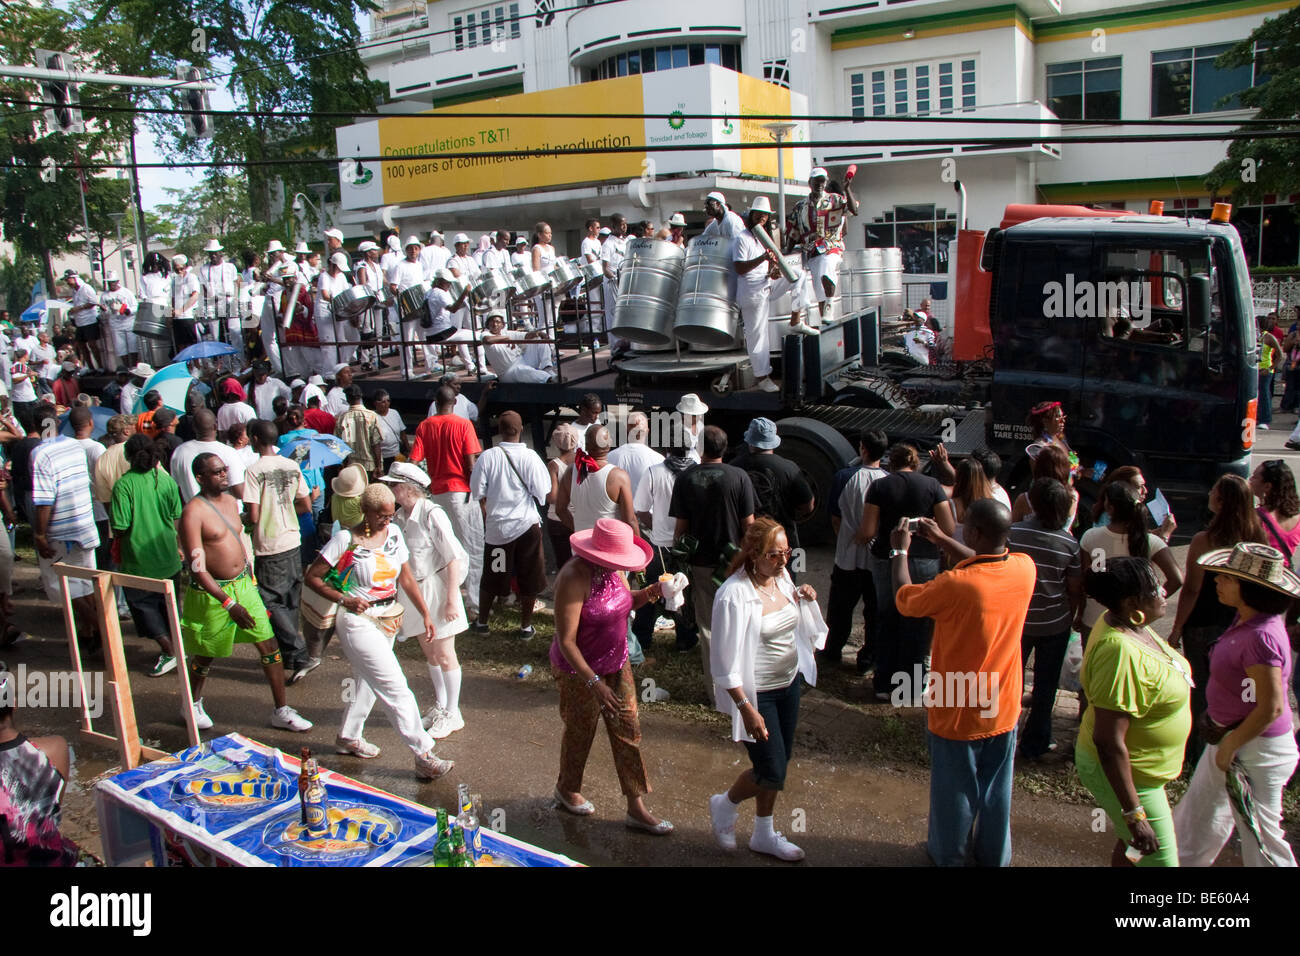 Les gens danser, habillé pour le carnaval de Trinidad Tobago Banque D'Images